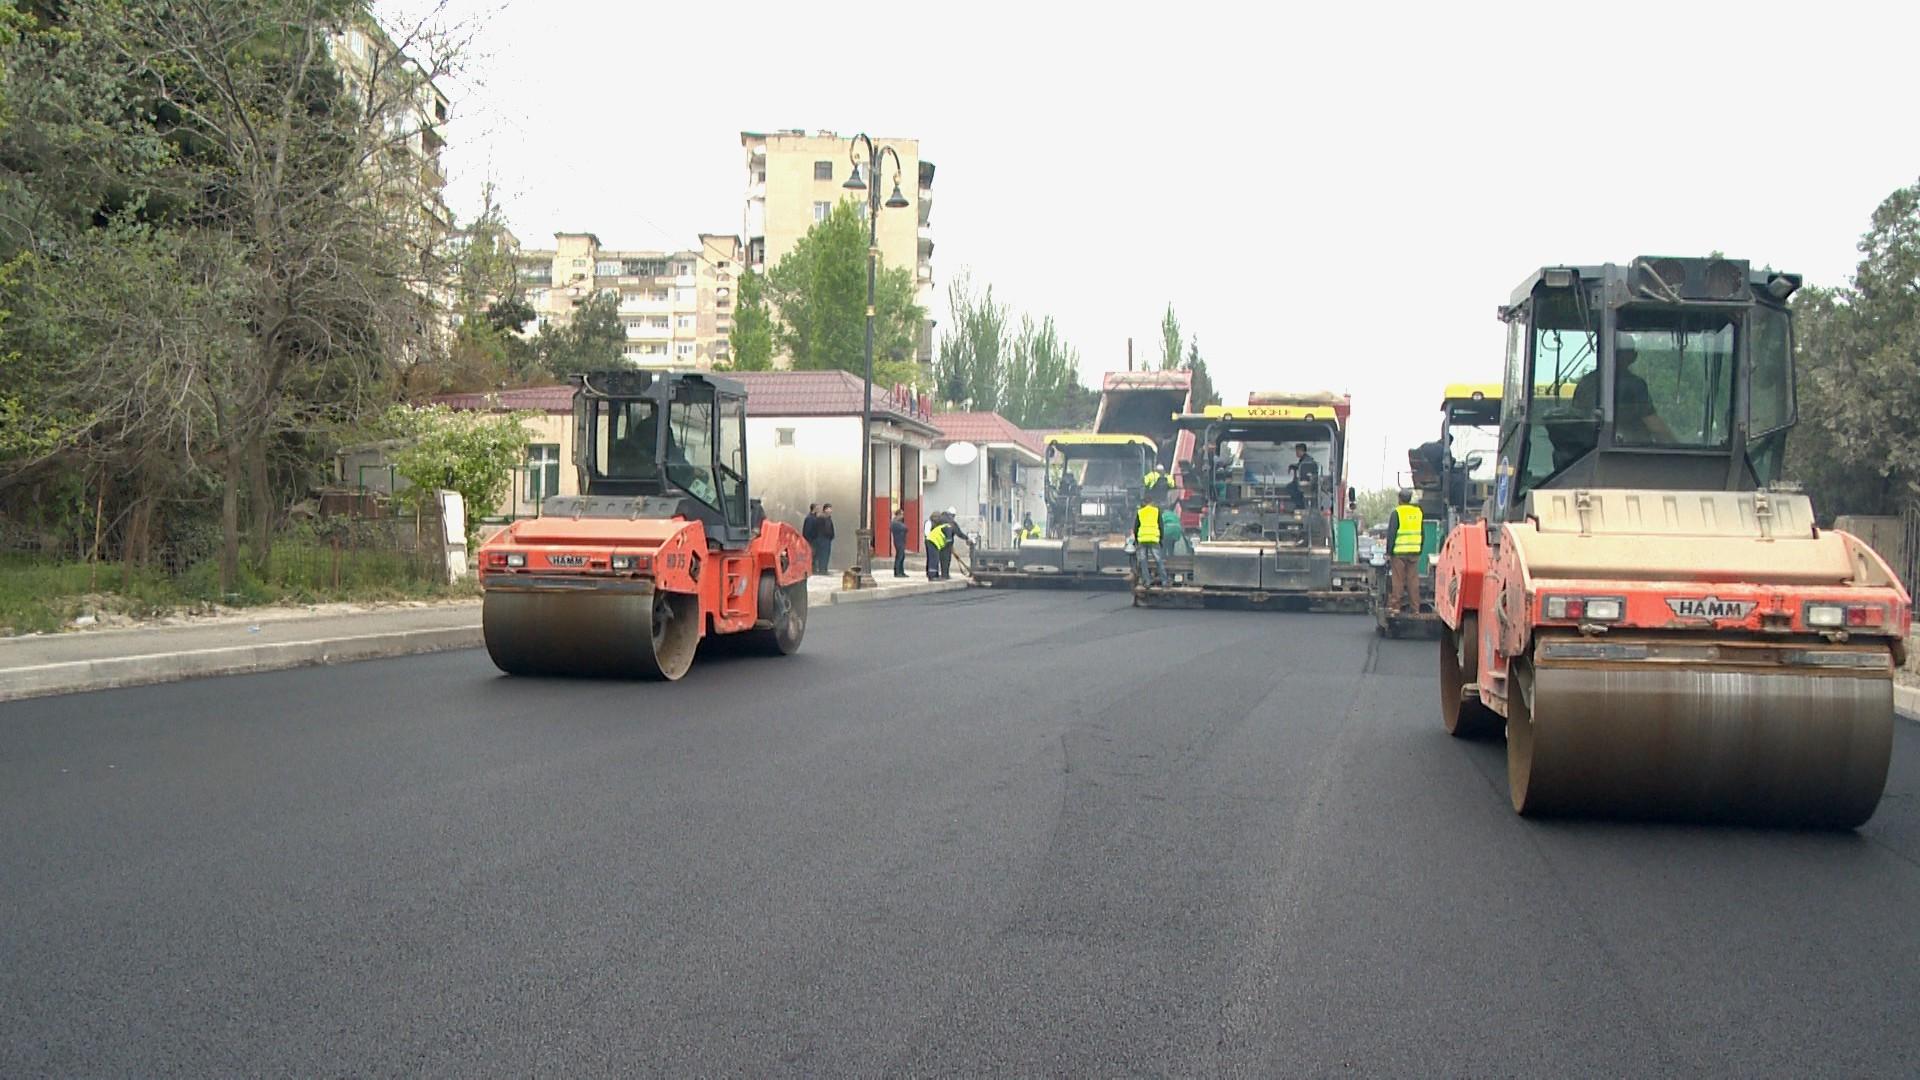 В Баку реконструируют одну из улиц (ФОТО)